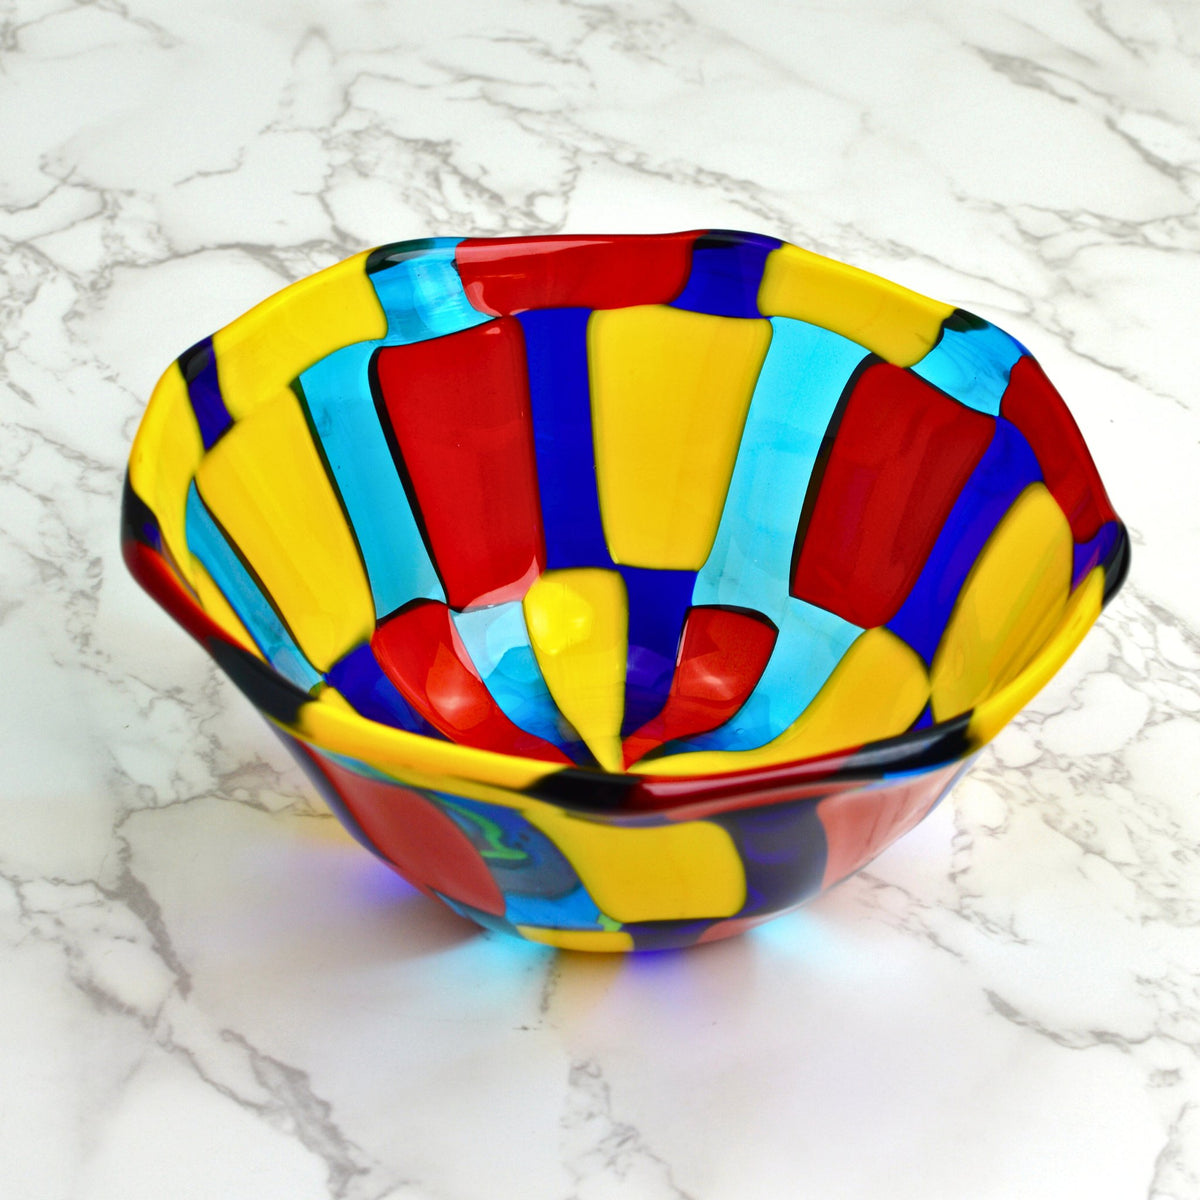 Murano Glass Pazzia Small Bowl, Multi-Colored, Made in Italy